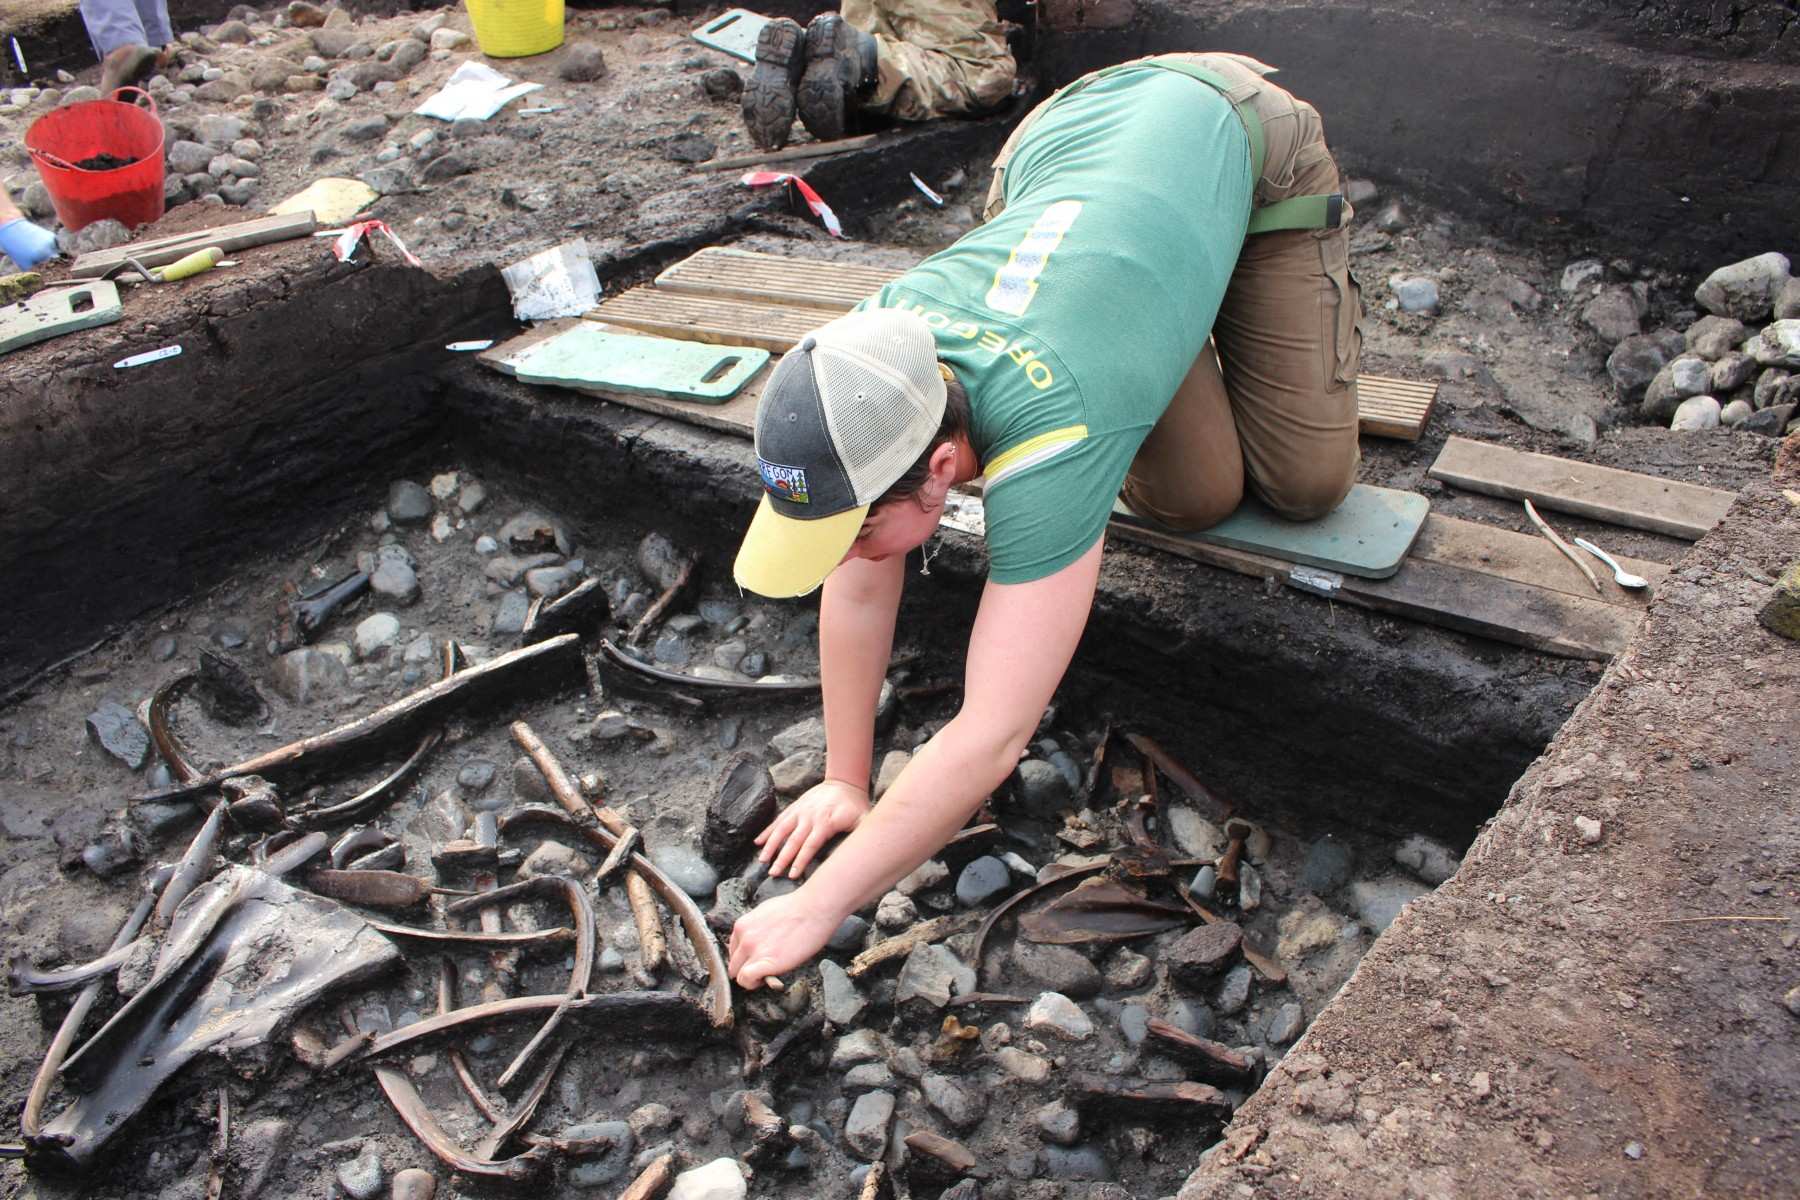 Zvieracie kosti, nástroje a zbrane spolu so vzácnymi dôkazmi o spracovaní dreva boli objavené počas vykopávok na mieste neďaleko Scarborough.